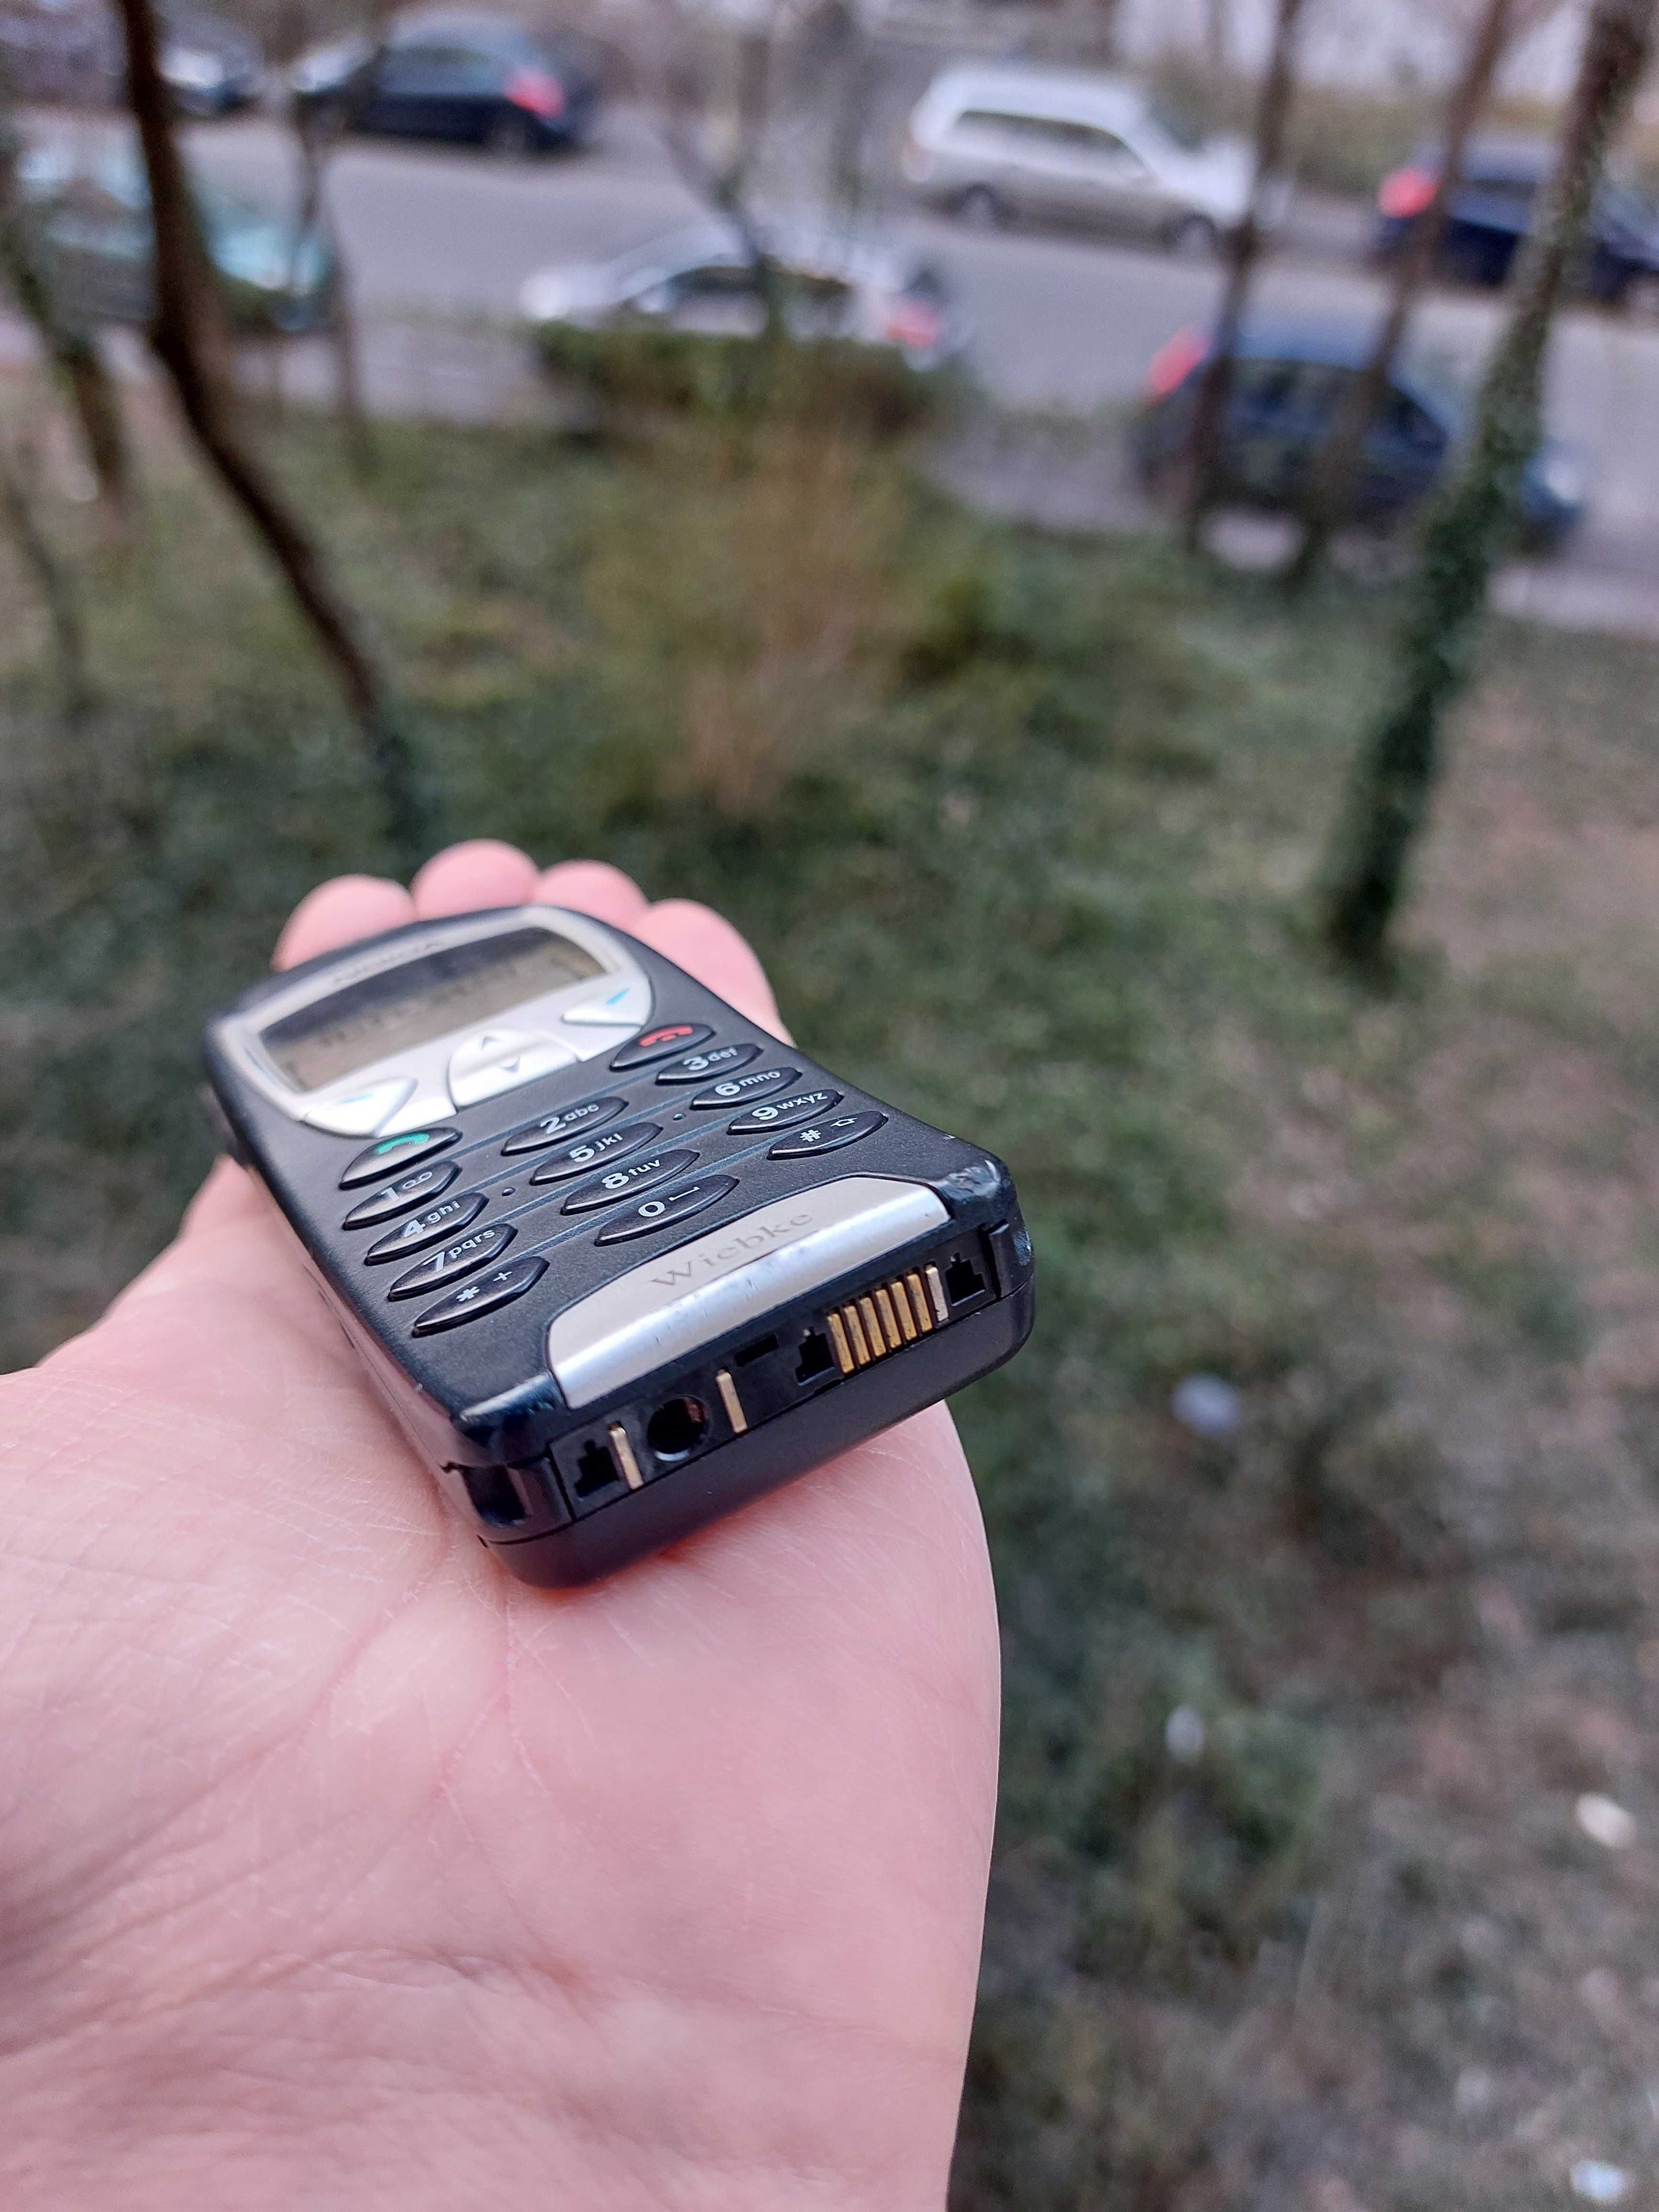 Nokia 6210 original an 2001 stare f buna carkit liber in orice retea